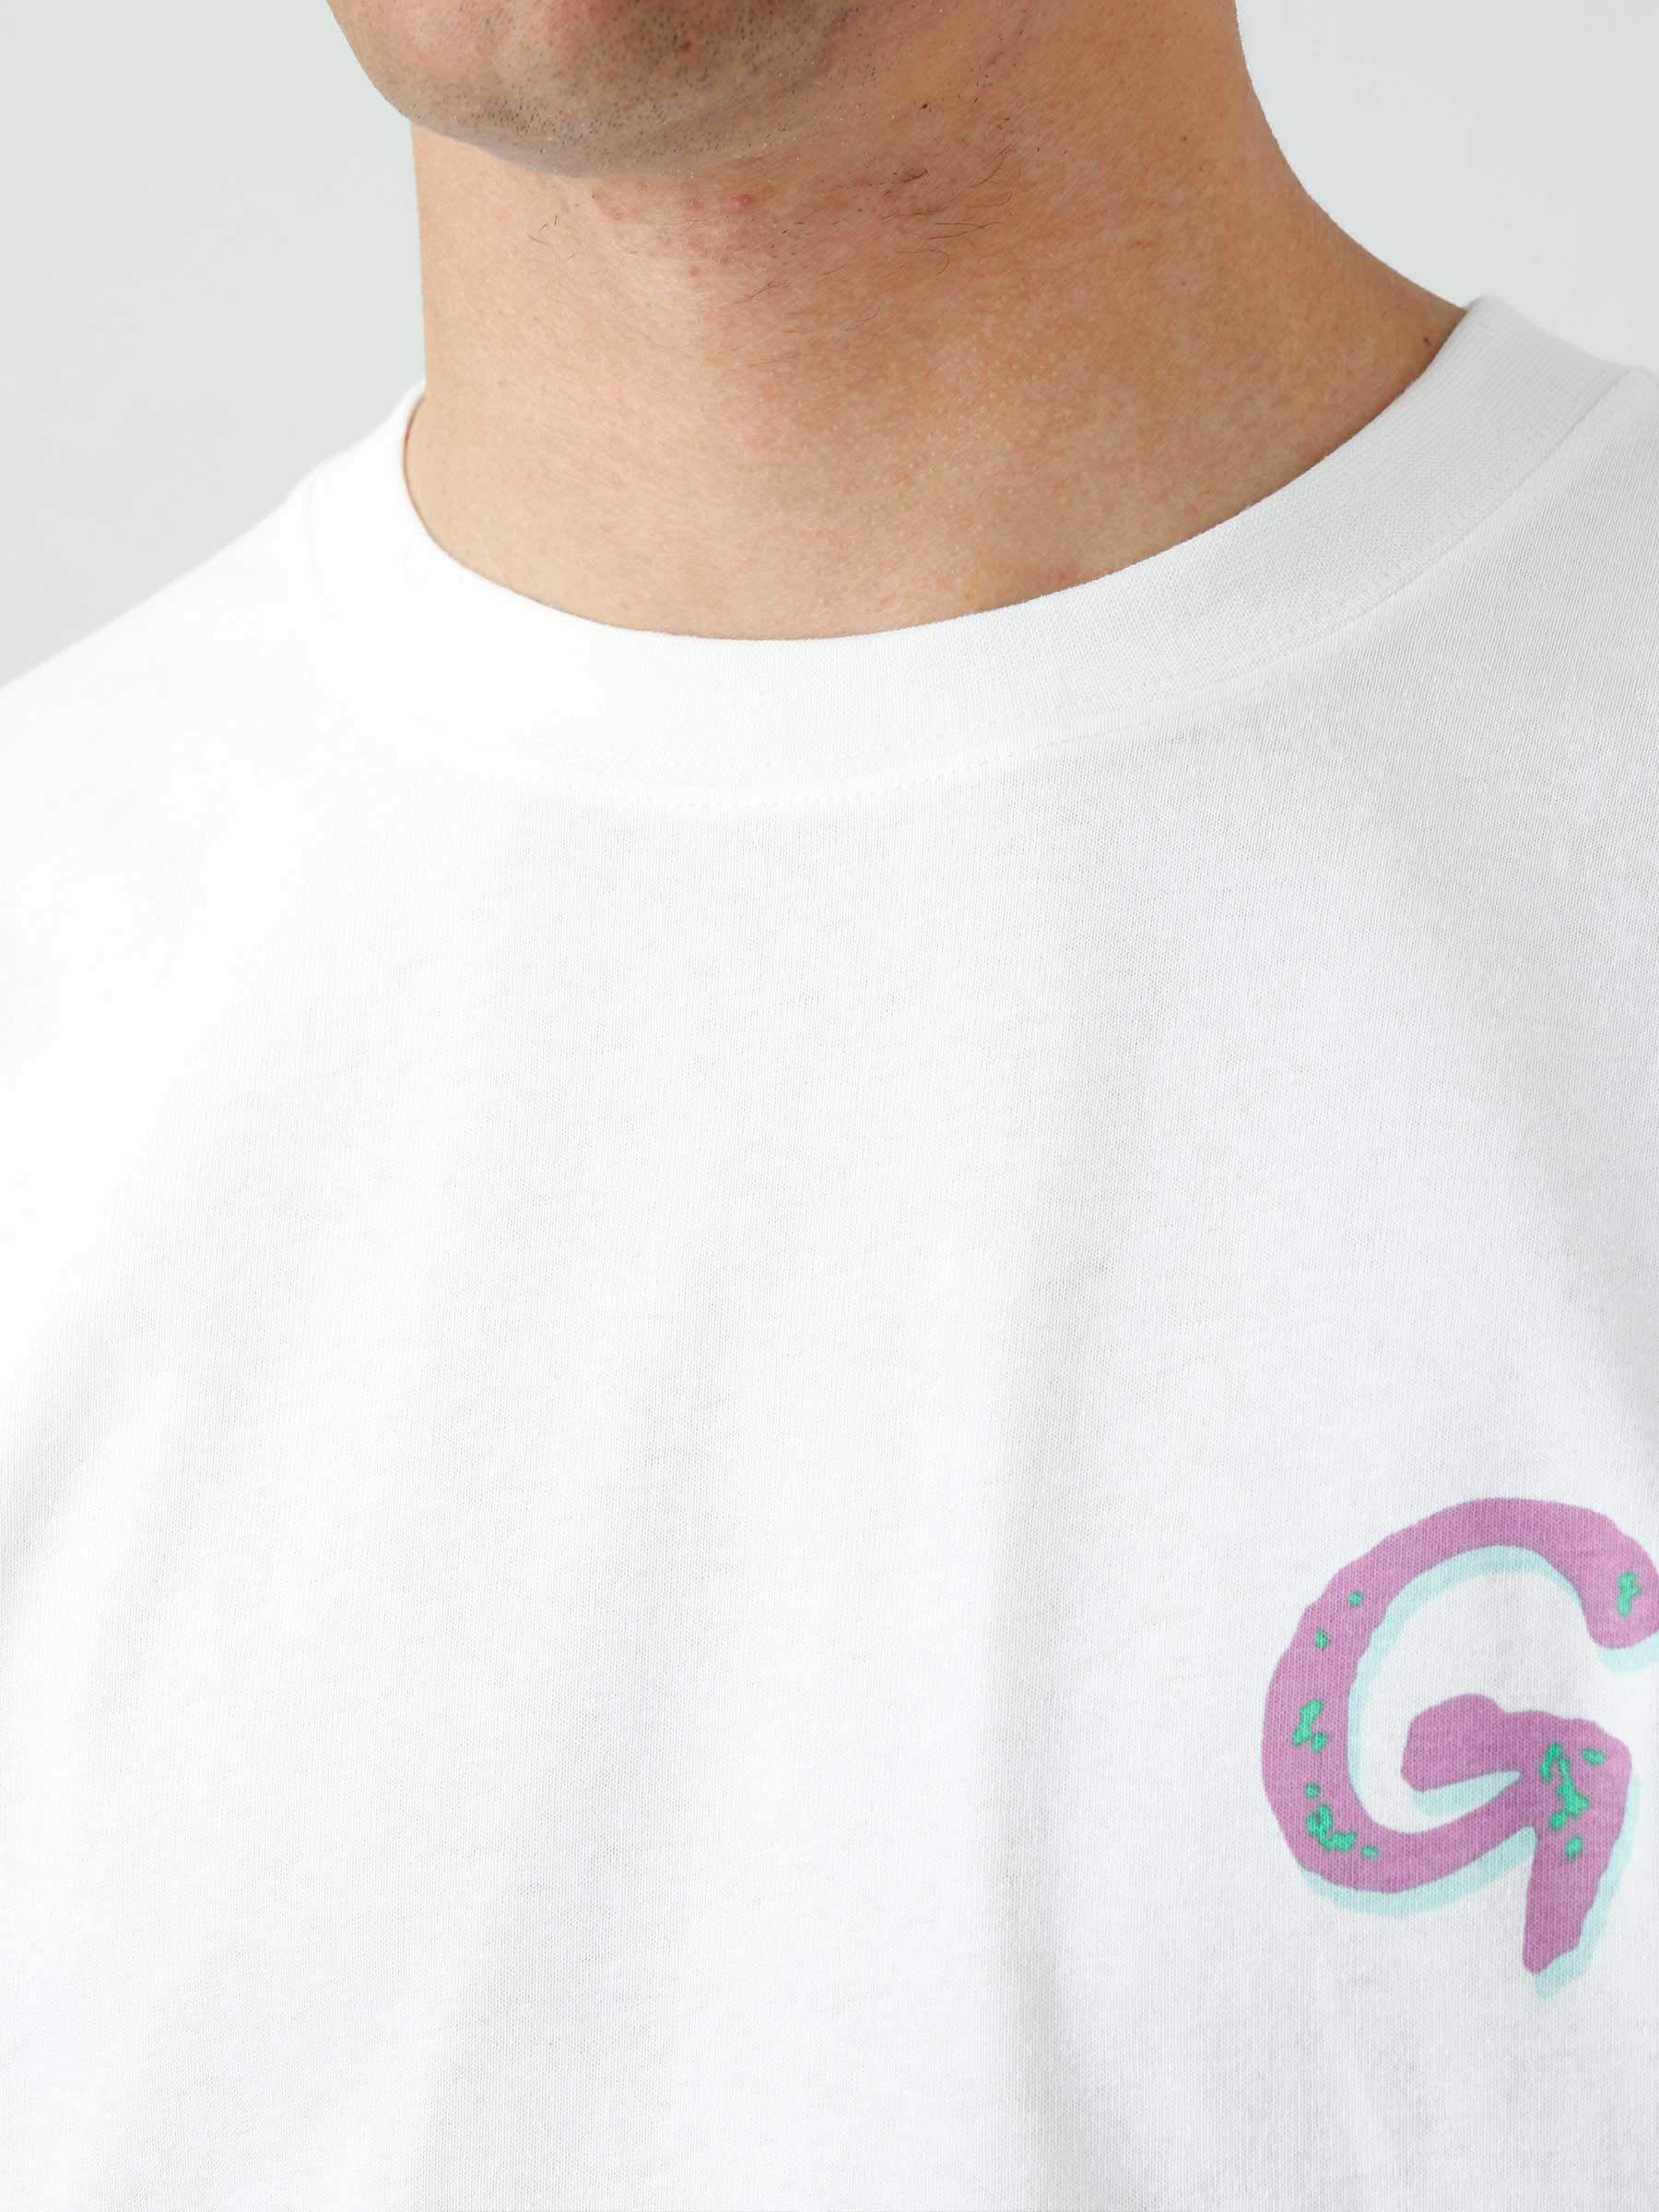 Swirl Longsleeve T-shirt White G2SU-T013